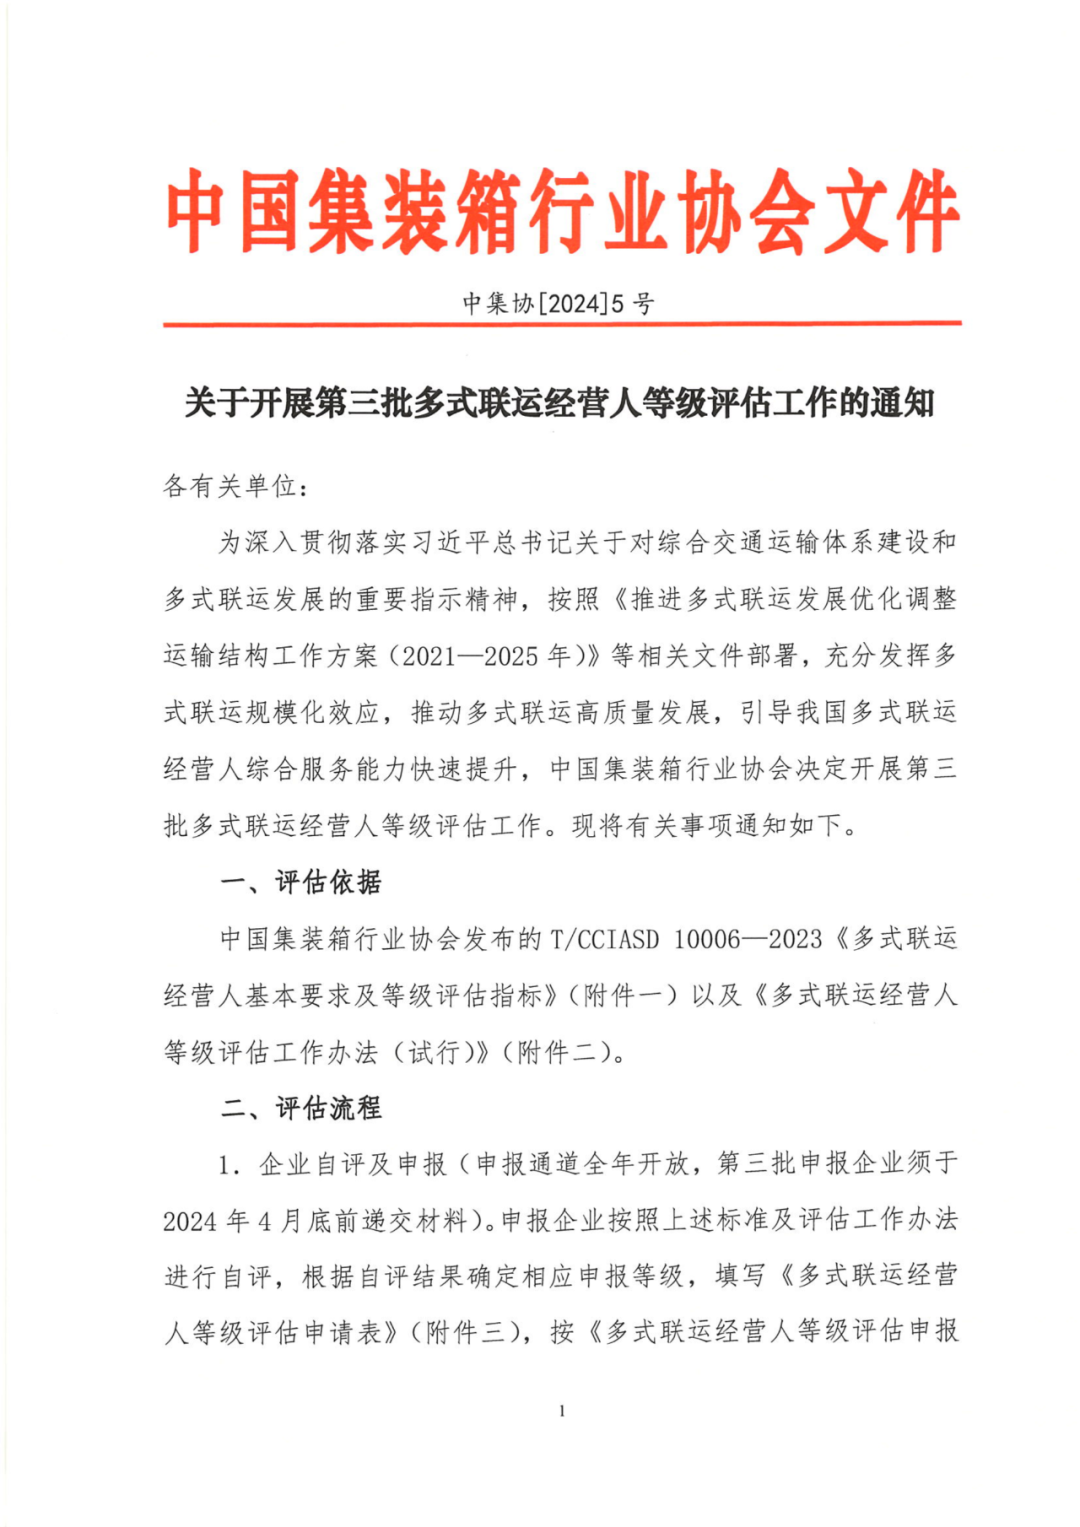 中国集装箱行业协会第三批多式联运经营人等级评估工作正式启动(图7)